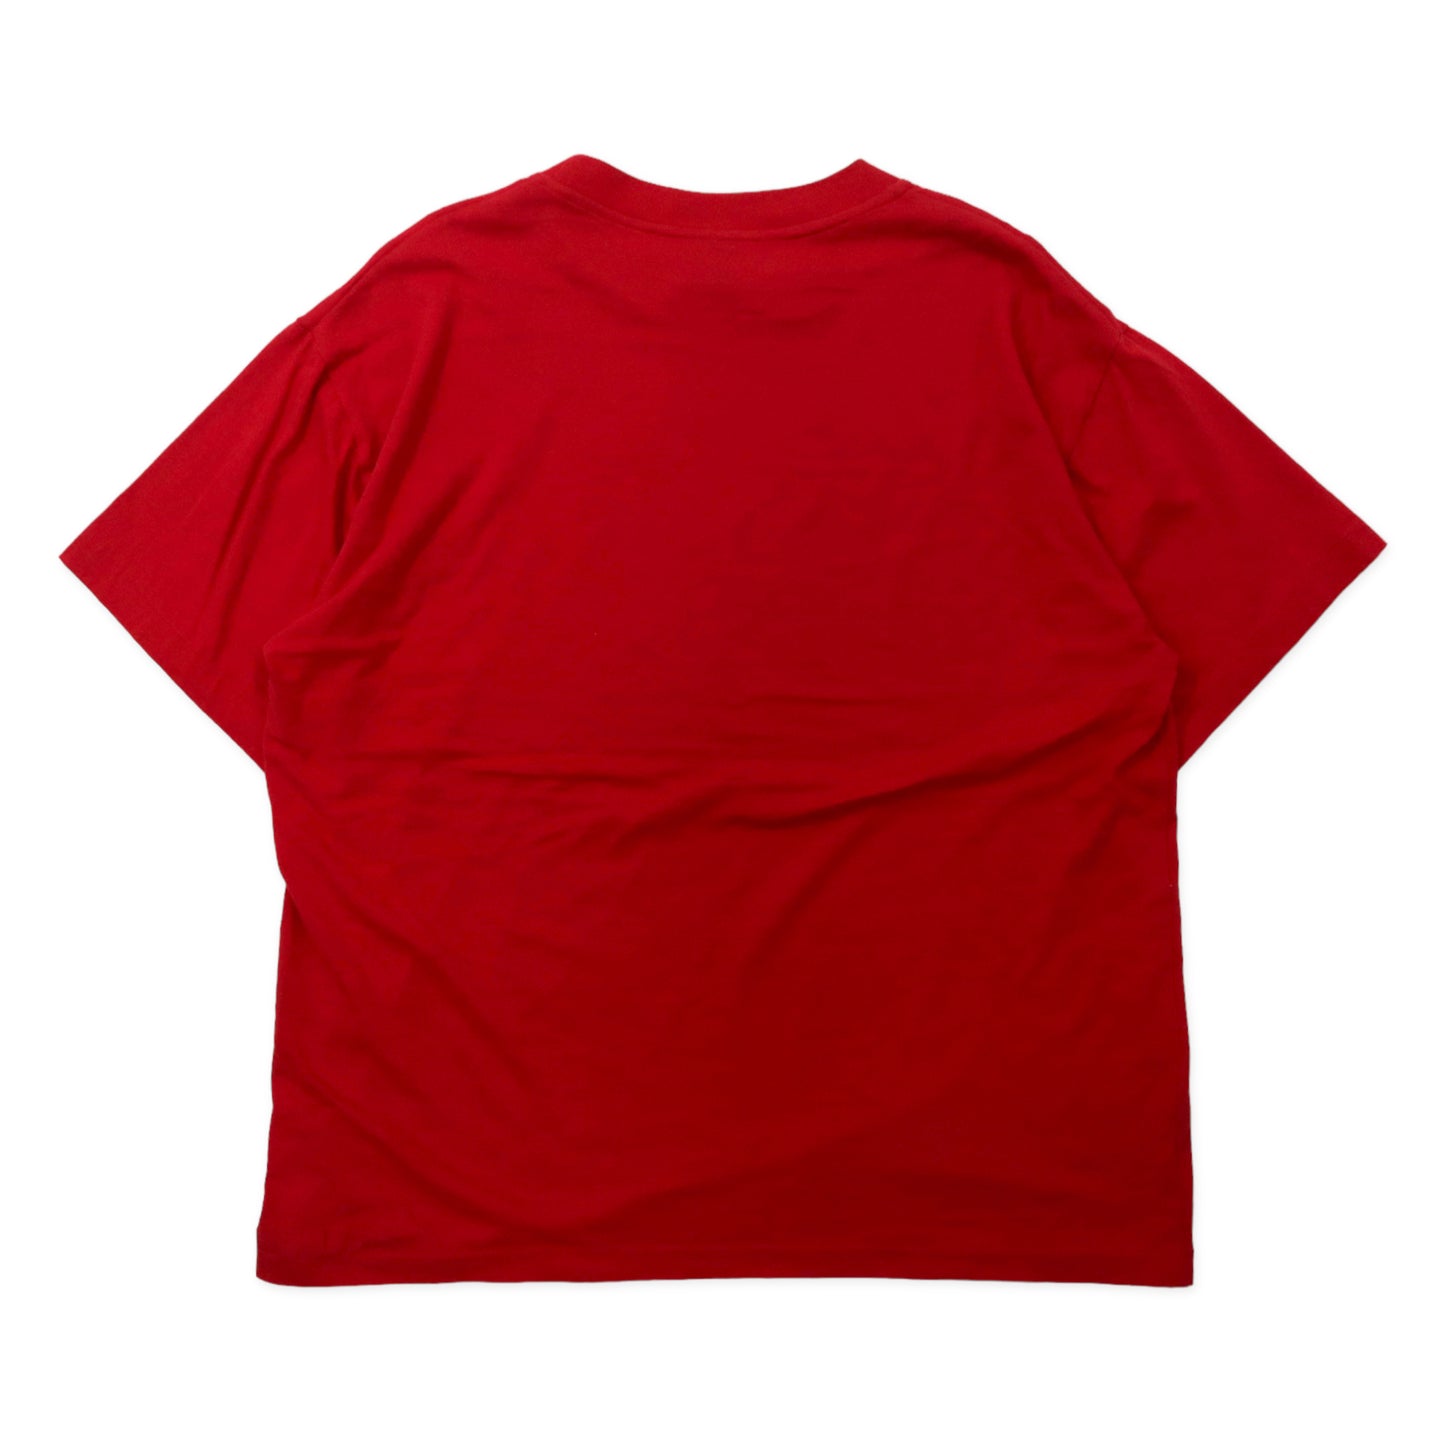 USA製 90年代 STUSSY シャネルロゴ Tシャツ L レッド コットン 紺タグ ビッグサイズ